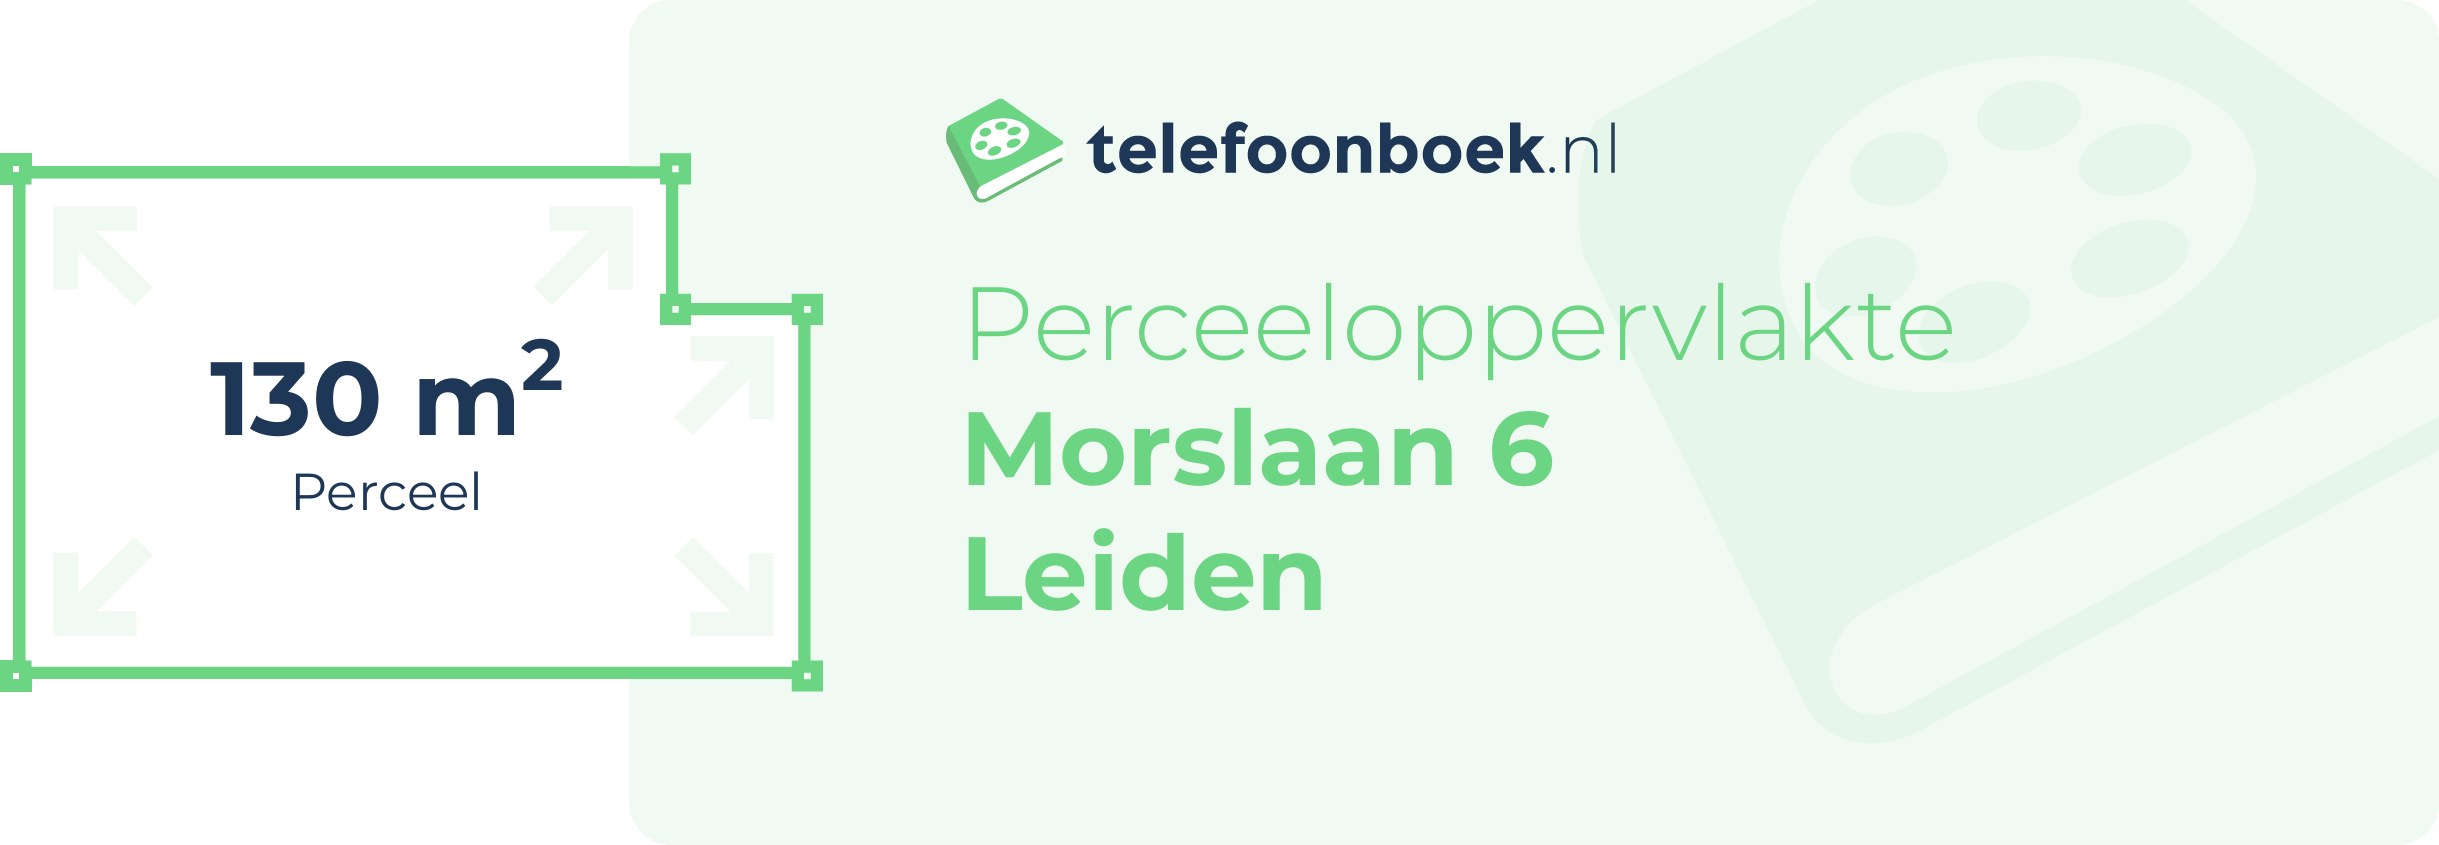 Perceeloppervlakte Morslaan 6 Leiden